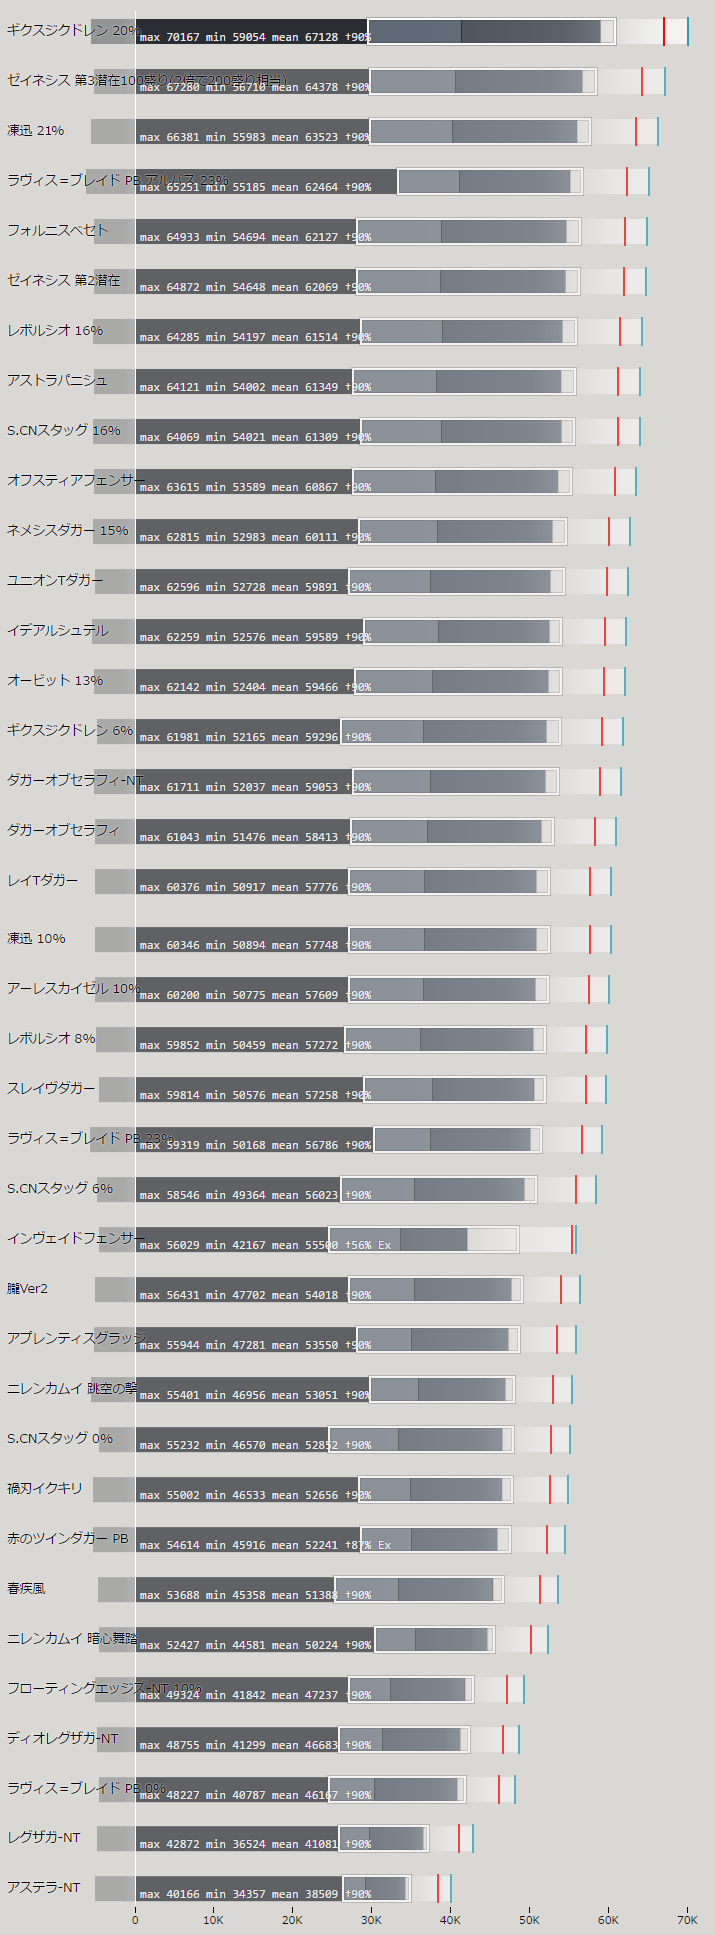 ツインダガー武器の火力比較ランキング表